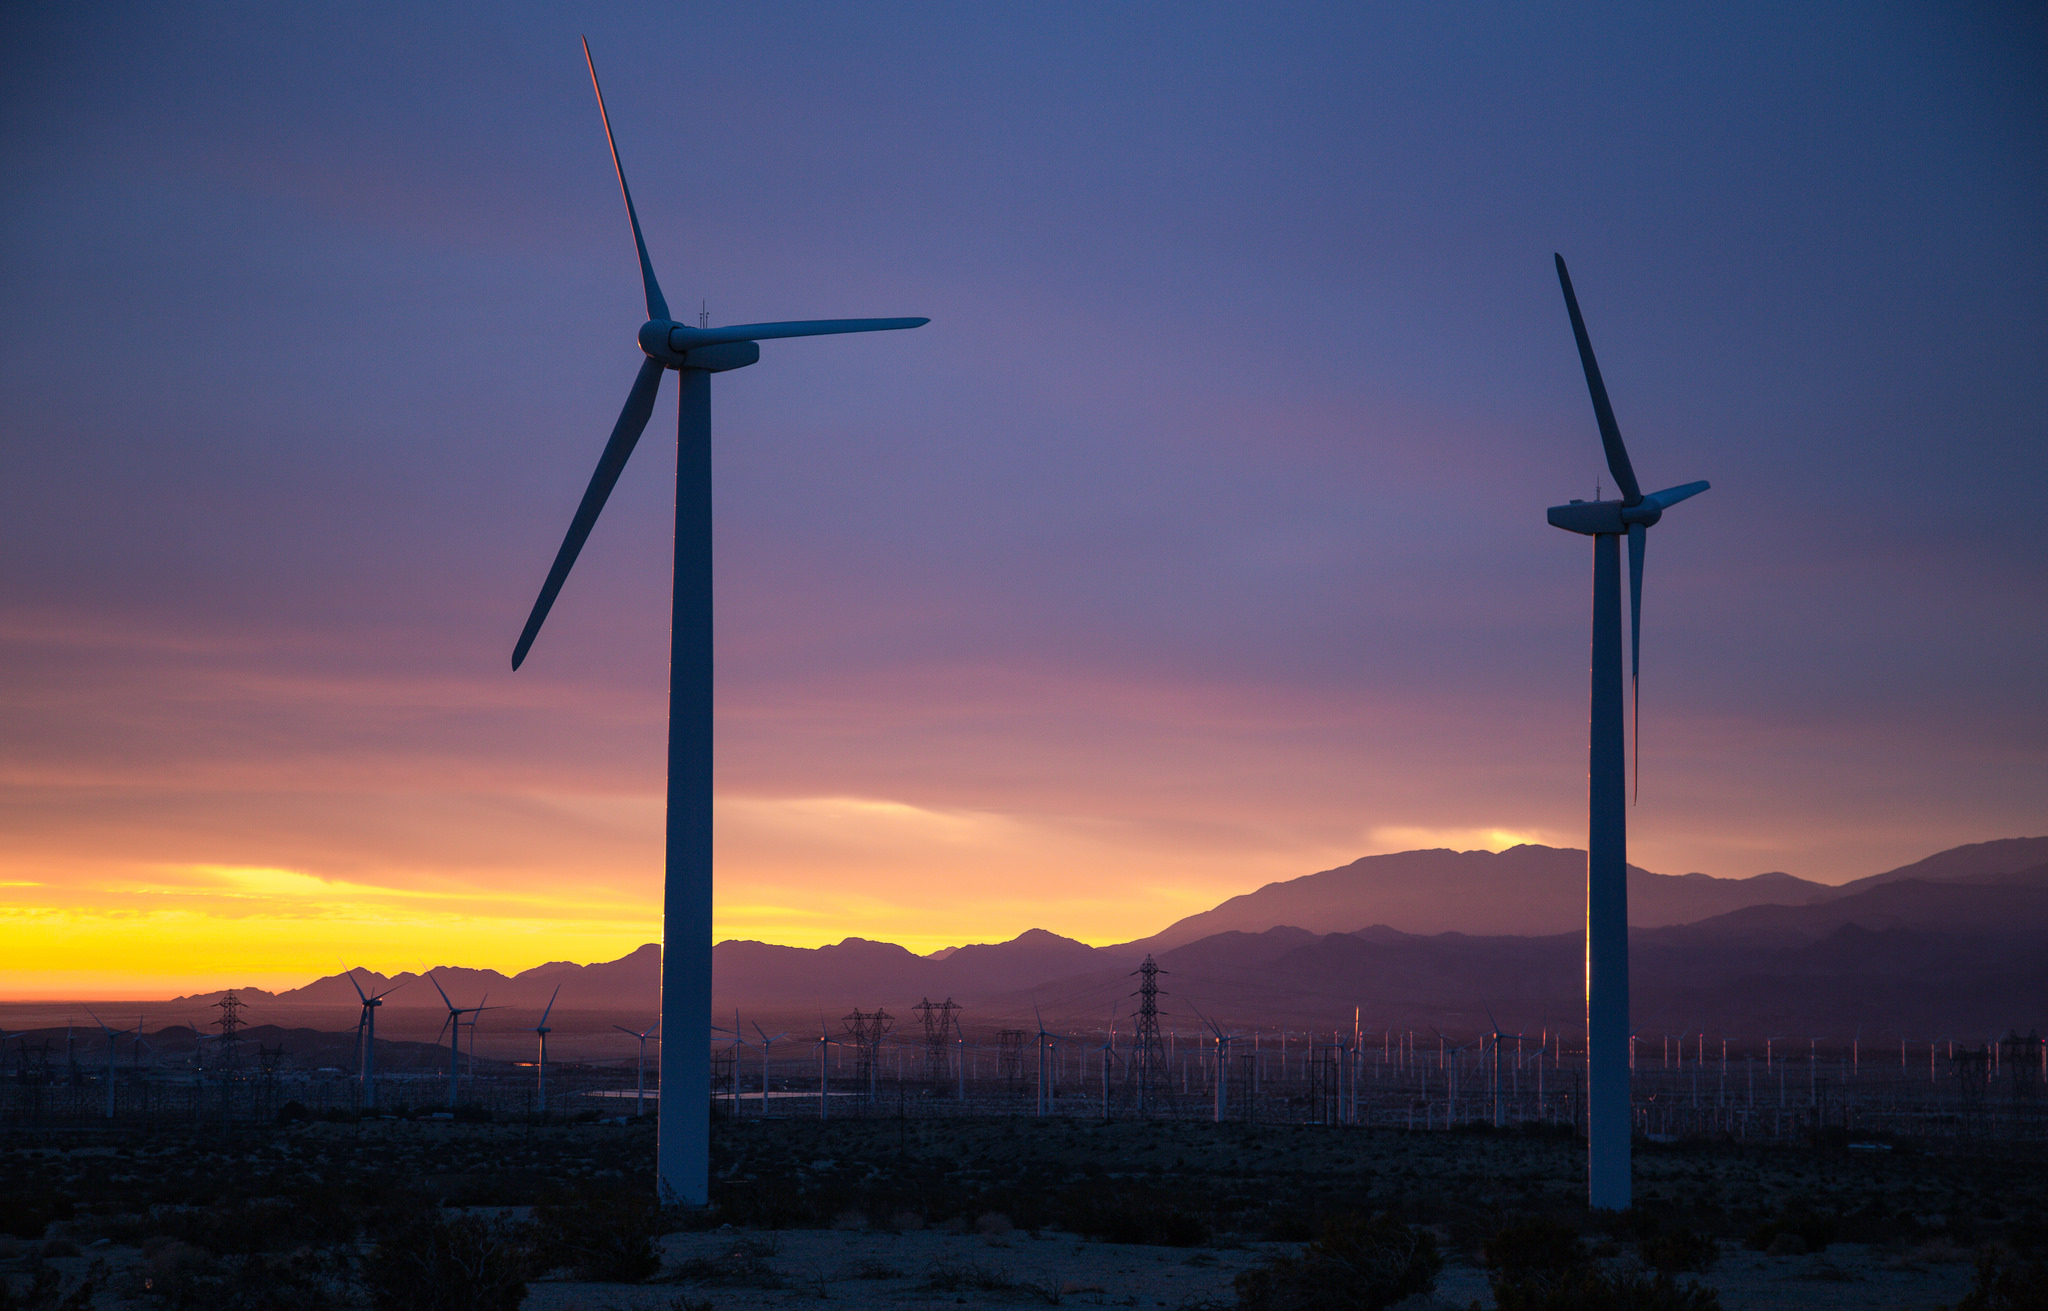 Desert critters avoid noisy wind farm turbines